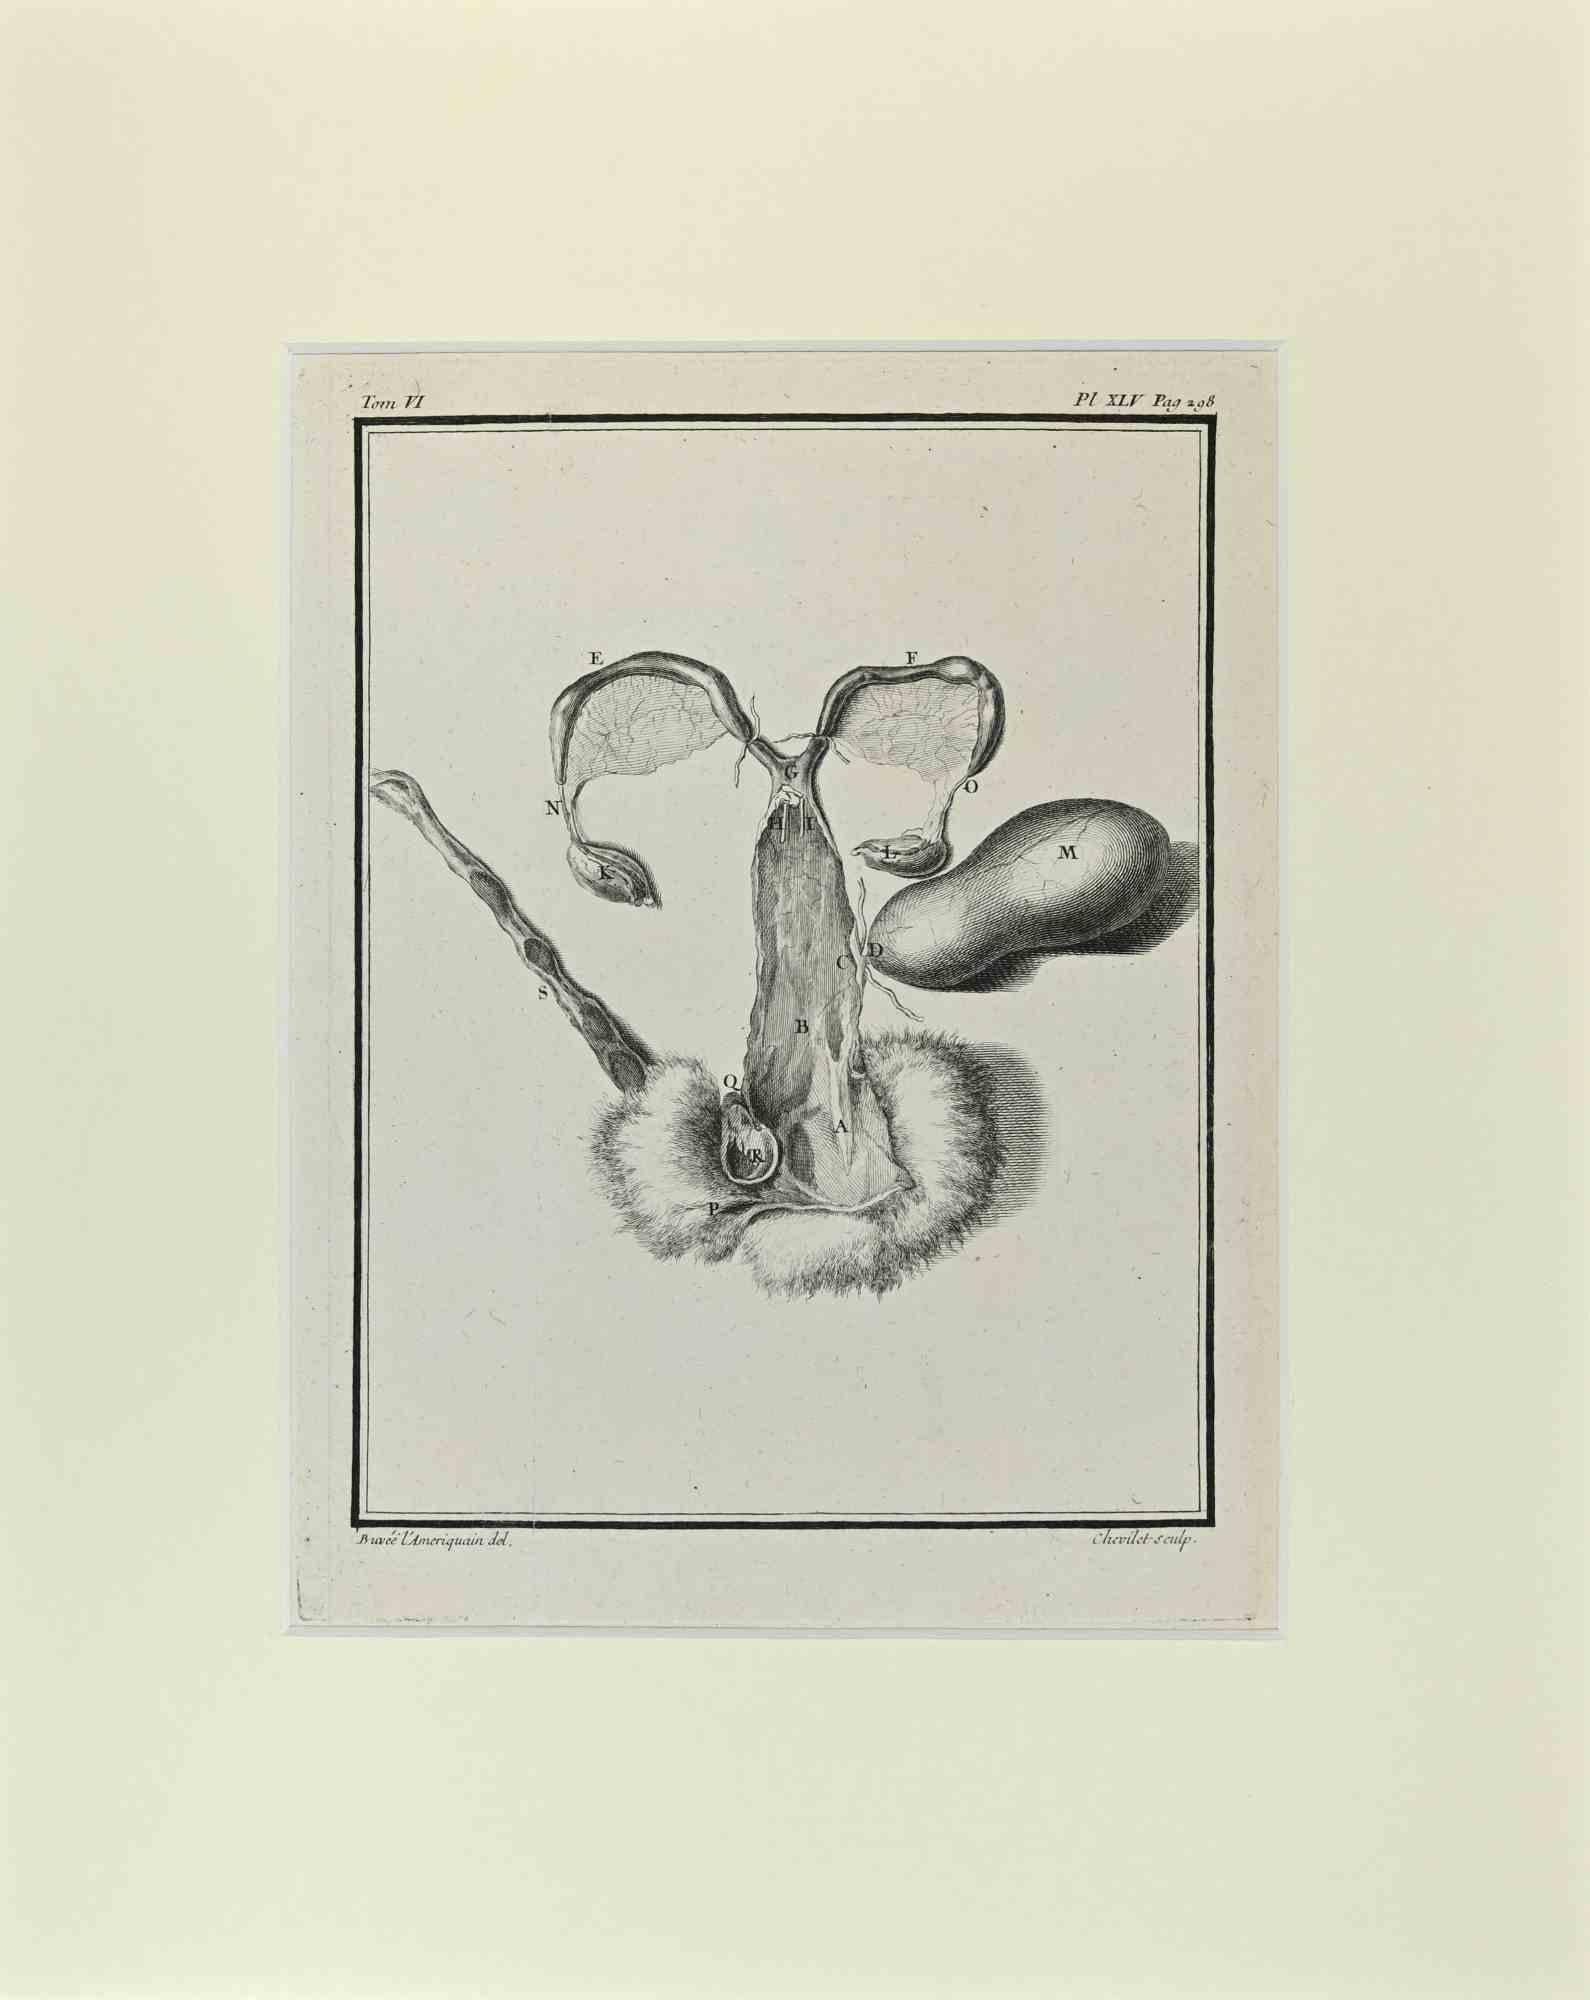 Anatomie Veterinär ist ein Kunstwerk von Buvée l'Américain aus dem Jahr 1771.  

Radierung B./W. Druck auf Elfenbeinpapier. Signiert auf der Platte am unteren linken Rand.

Das Werk ist auf Karton geklebt. Abmessungen insgesamt: 35x28 cm.

Das